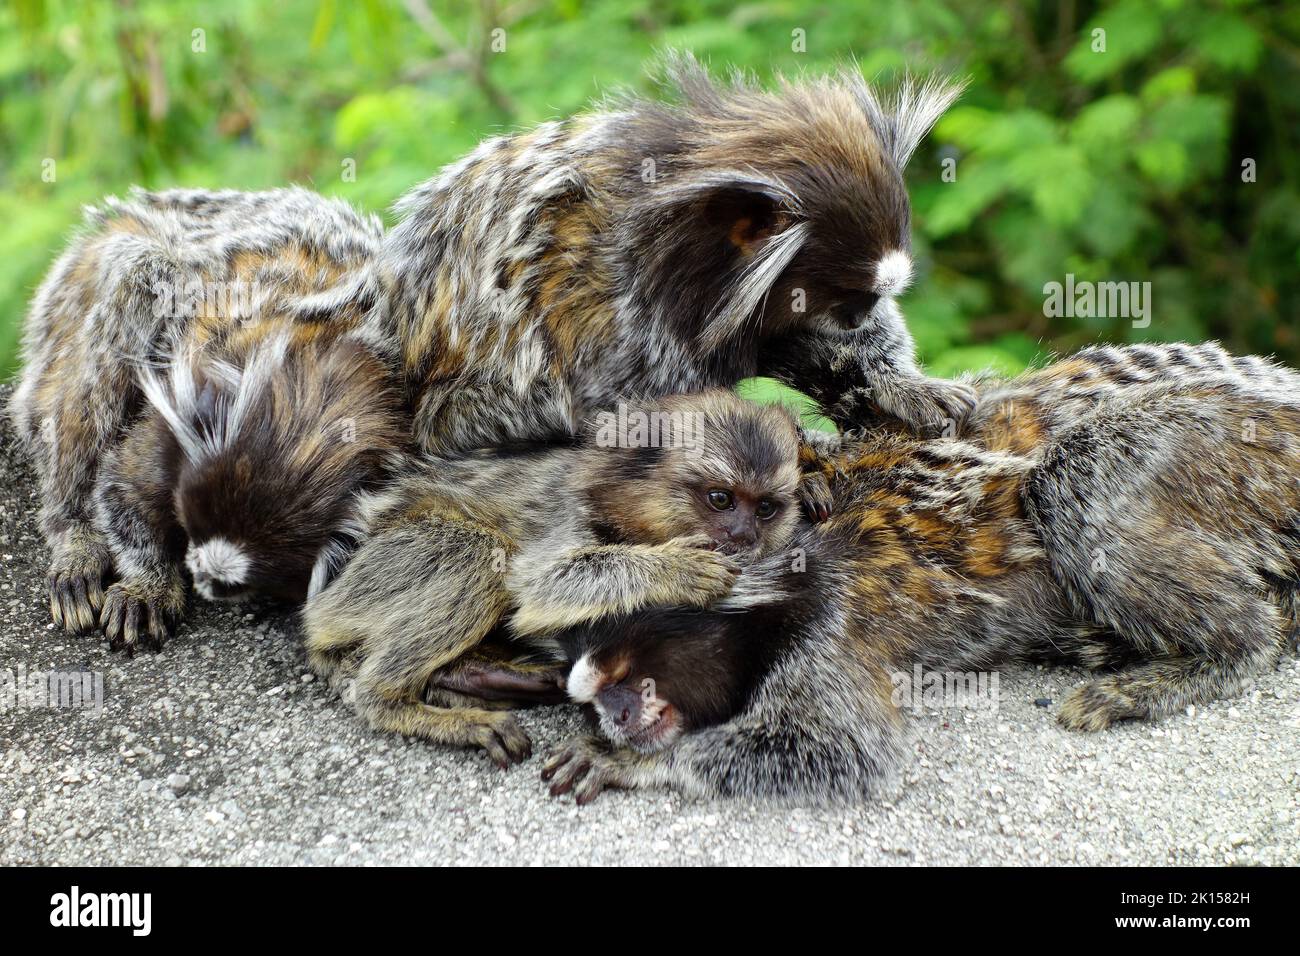 Common marmoset, Weißbüschelaffe, Callithrix jacchus, Sugarloaf Mountain, Pão de Açúcar, Rio de Janeiro, Southeast Region, Brazil, South America Stock Photo